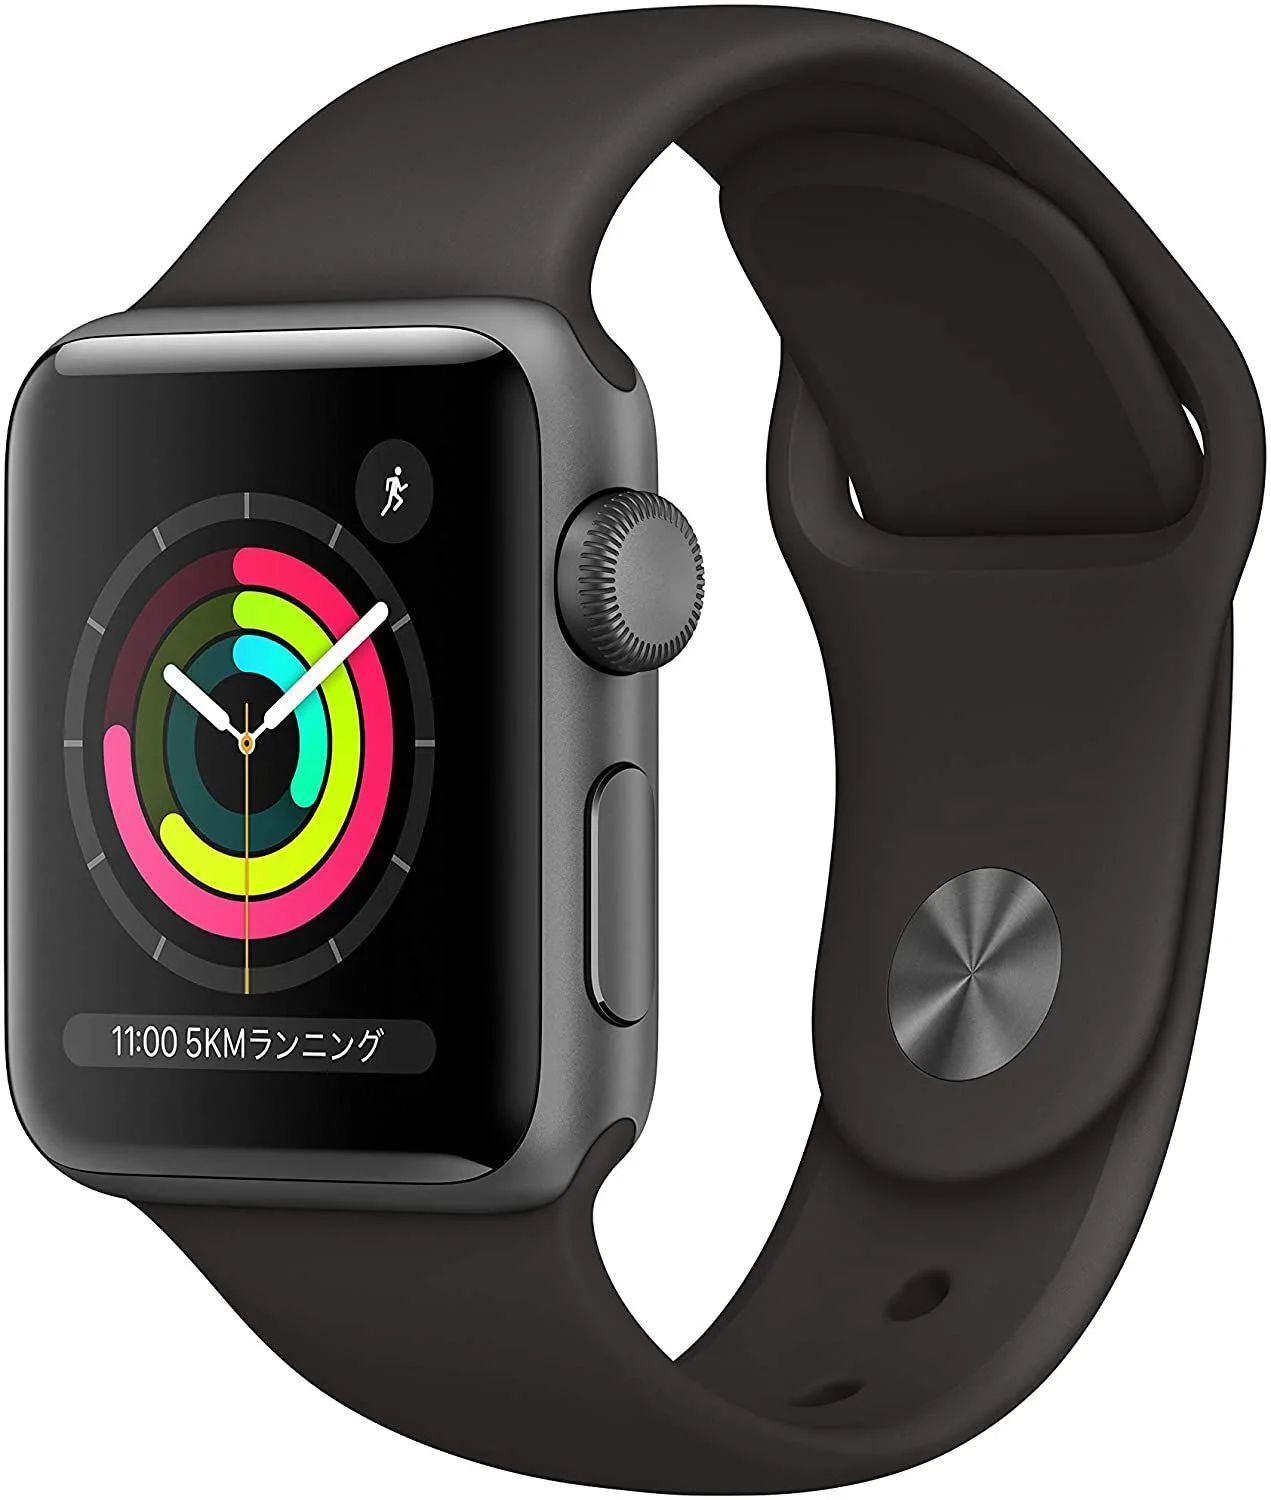 Apple Watch Series 3(GPSモデル)- 38mmスペースグレイアルミニウムケースとブラックスポーツバンド